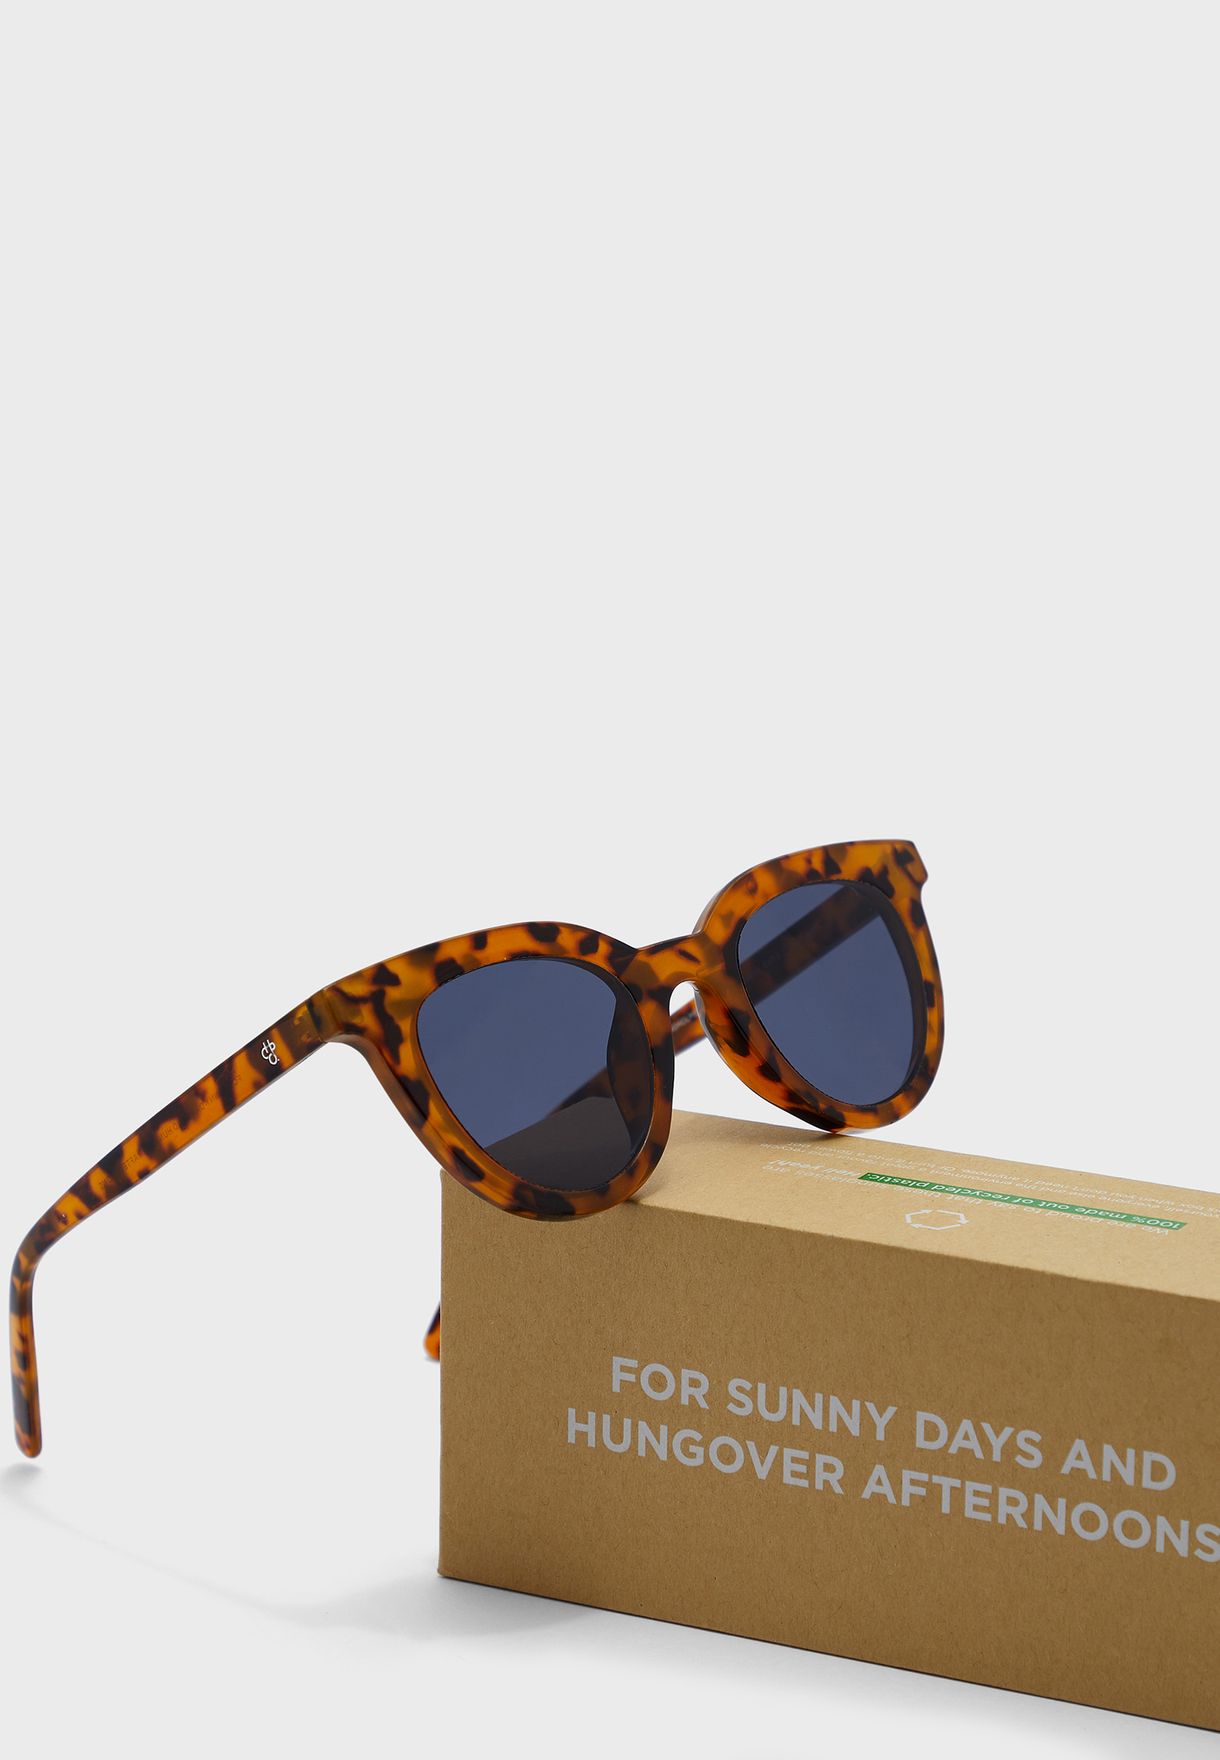 Långholmen Sunglasses